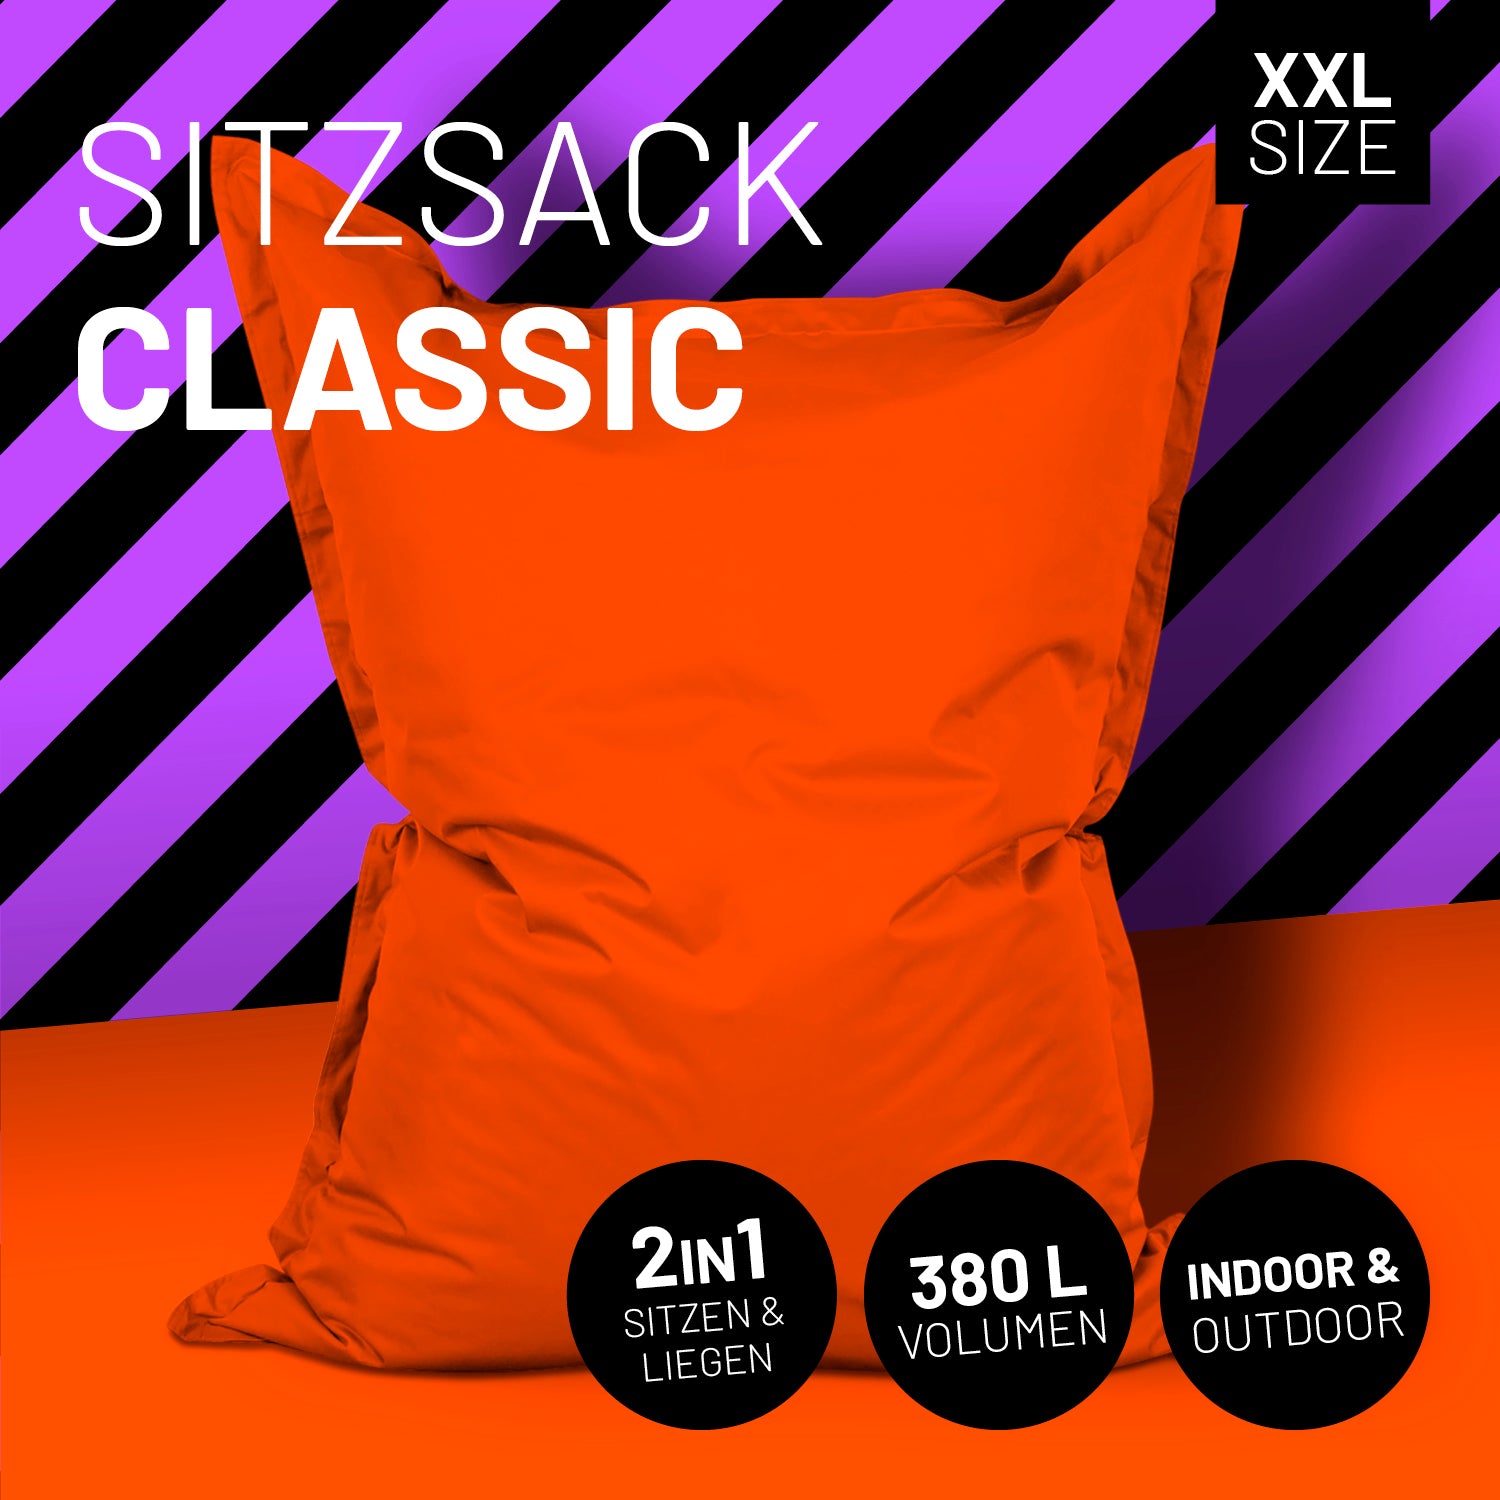 Sitzsack Classic XXL (380 L) - indoor & outdoor - Orange